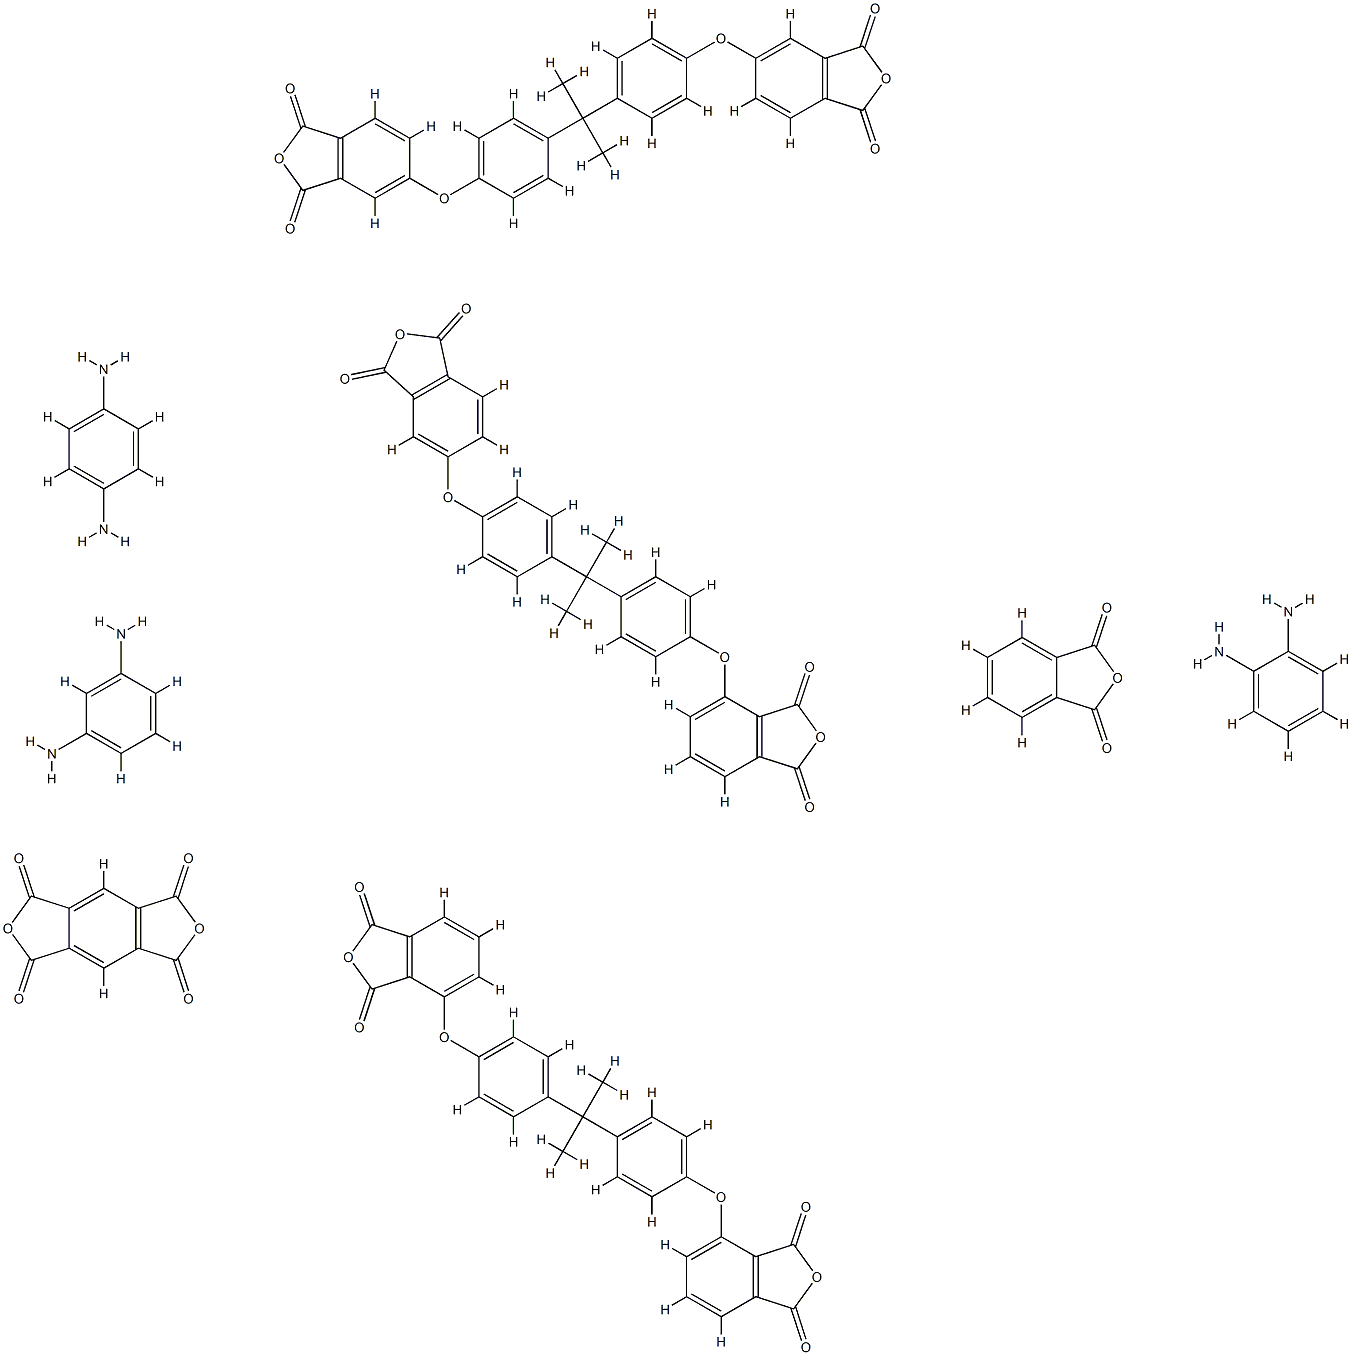 1H,3H-Benzo1,2-c:4,5-cdifuran-1,3,5,7-tetrone, polymer with 1,2-benzenediamine, 1,3-benzenediamine, 1,4-benzenediamine, 4-4-1-4-(1,3-dihydro-1,3-dioxo-5-isobenzofuranyl)oxyphenyl-1-methylethylphenoxy-1,3-isobenzofurandione, 1,3-isobenzofurandione, 4,4-(1-|均苯四甲酸二酐接枝聚醚酰亚胺